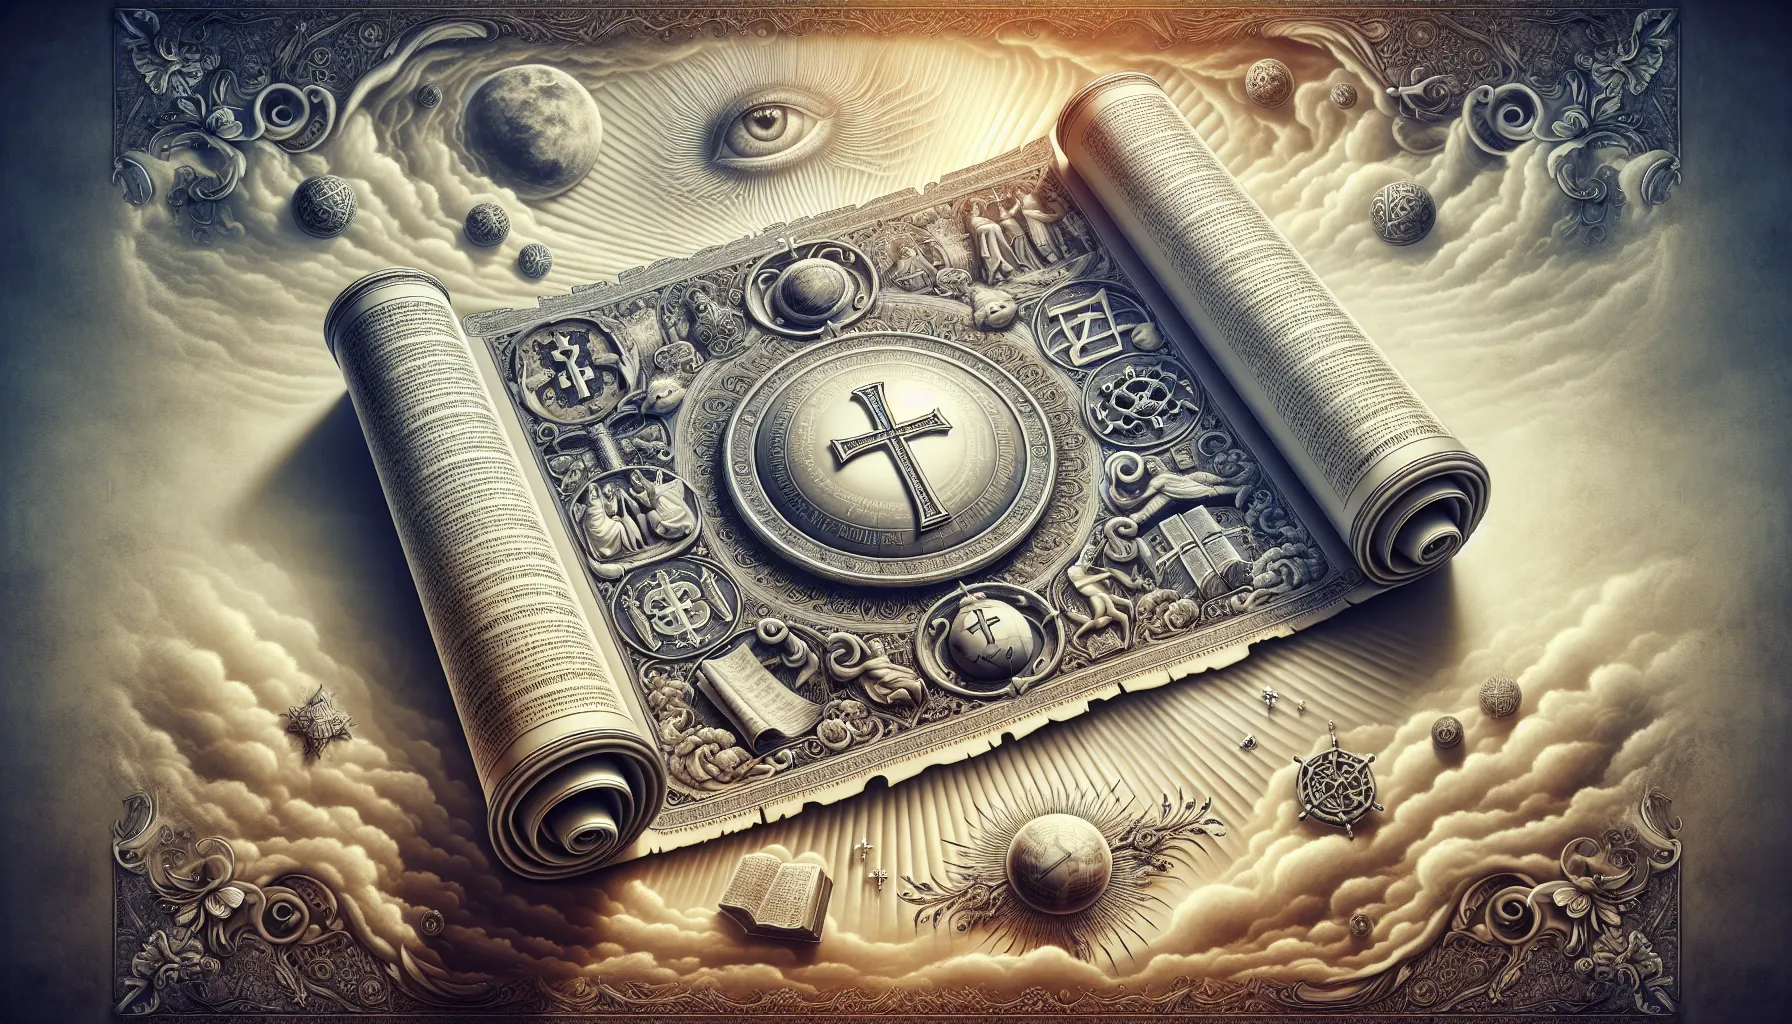 Imagen ilustrativa de un pergamino antiguo con símbolos religiosos y una cruz, representando la Escatología Cristiana y su estudio bíblico.